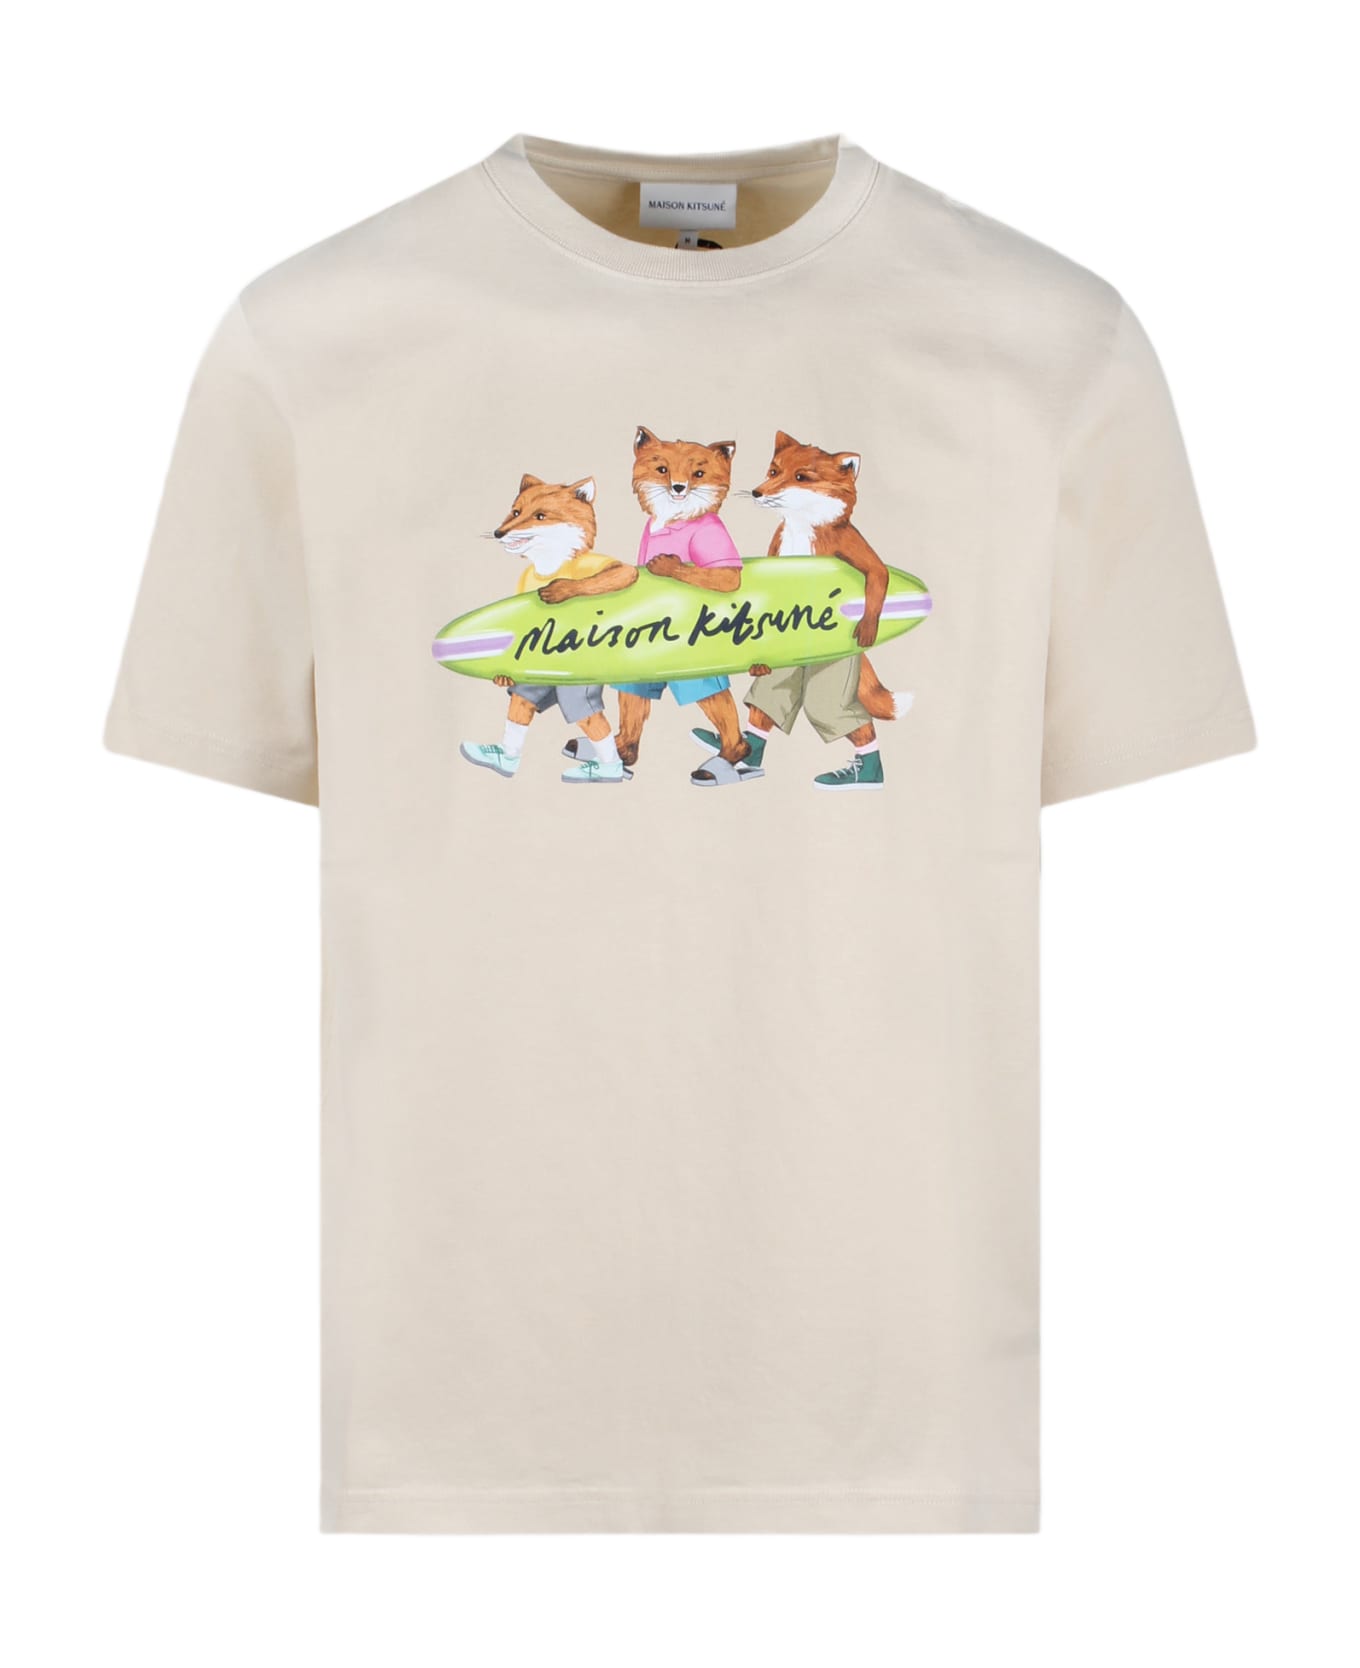 Maison Kitsuné Surfing Foxes T-shirt - Nude & Neutrals シャツ